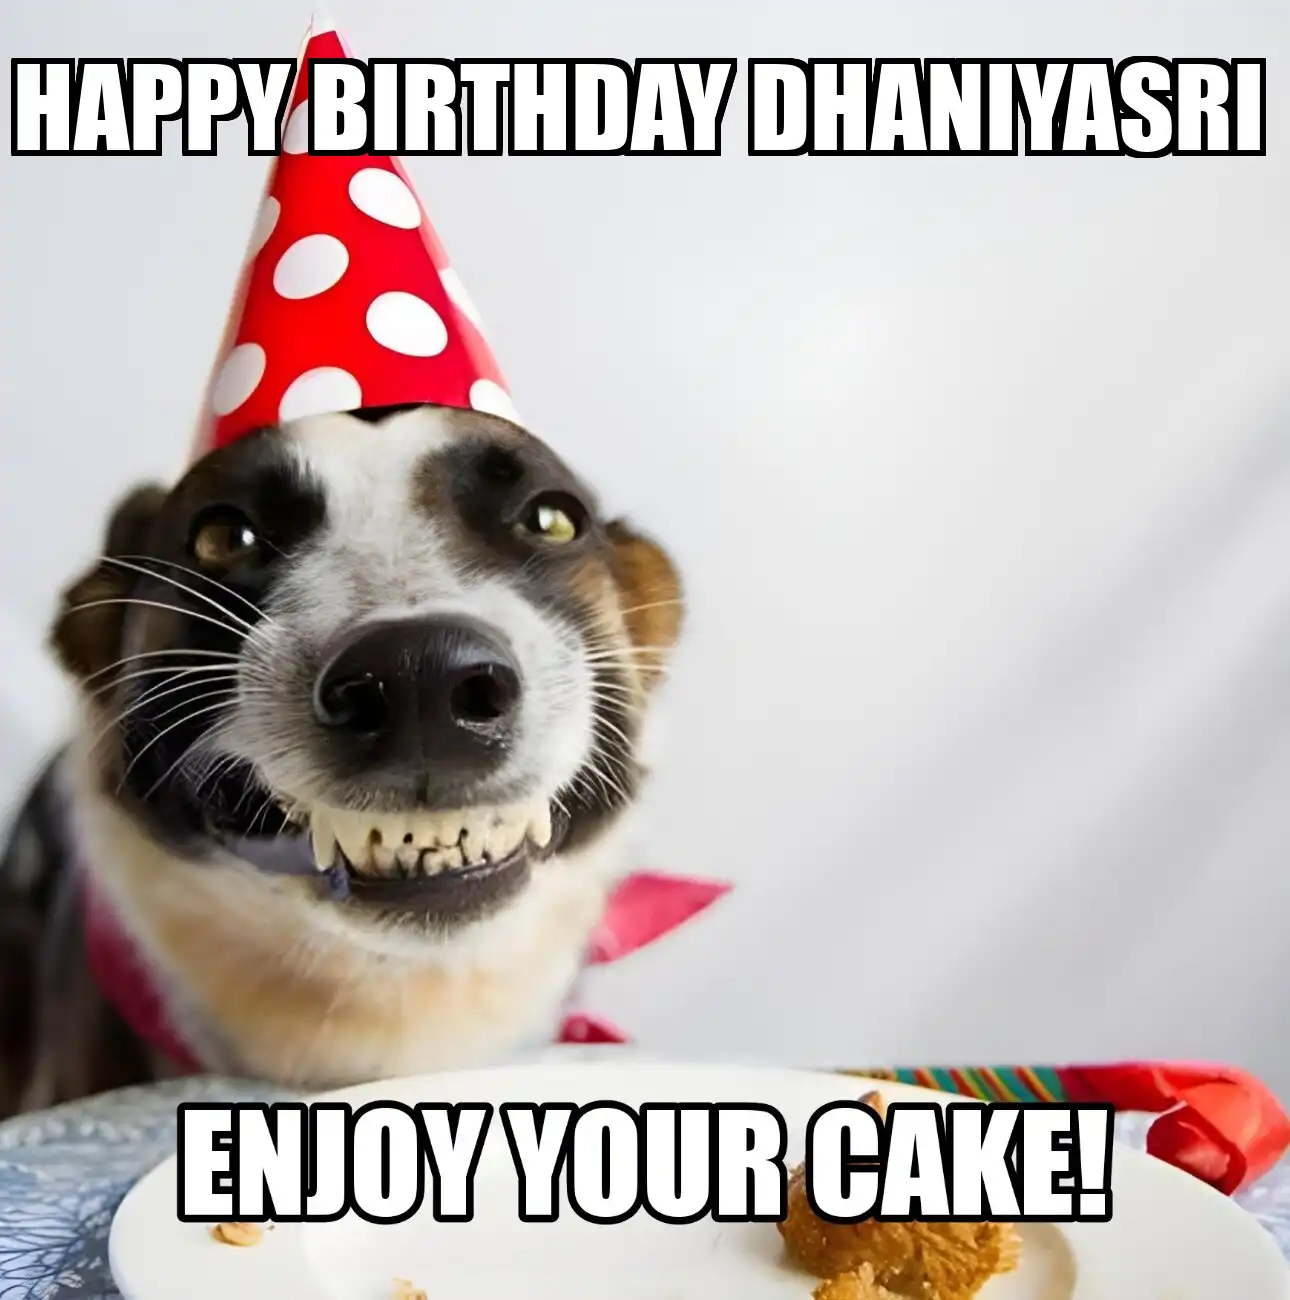 Happy Birthday Dhaniyasri Enjoy Your Cake Dog Meme